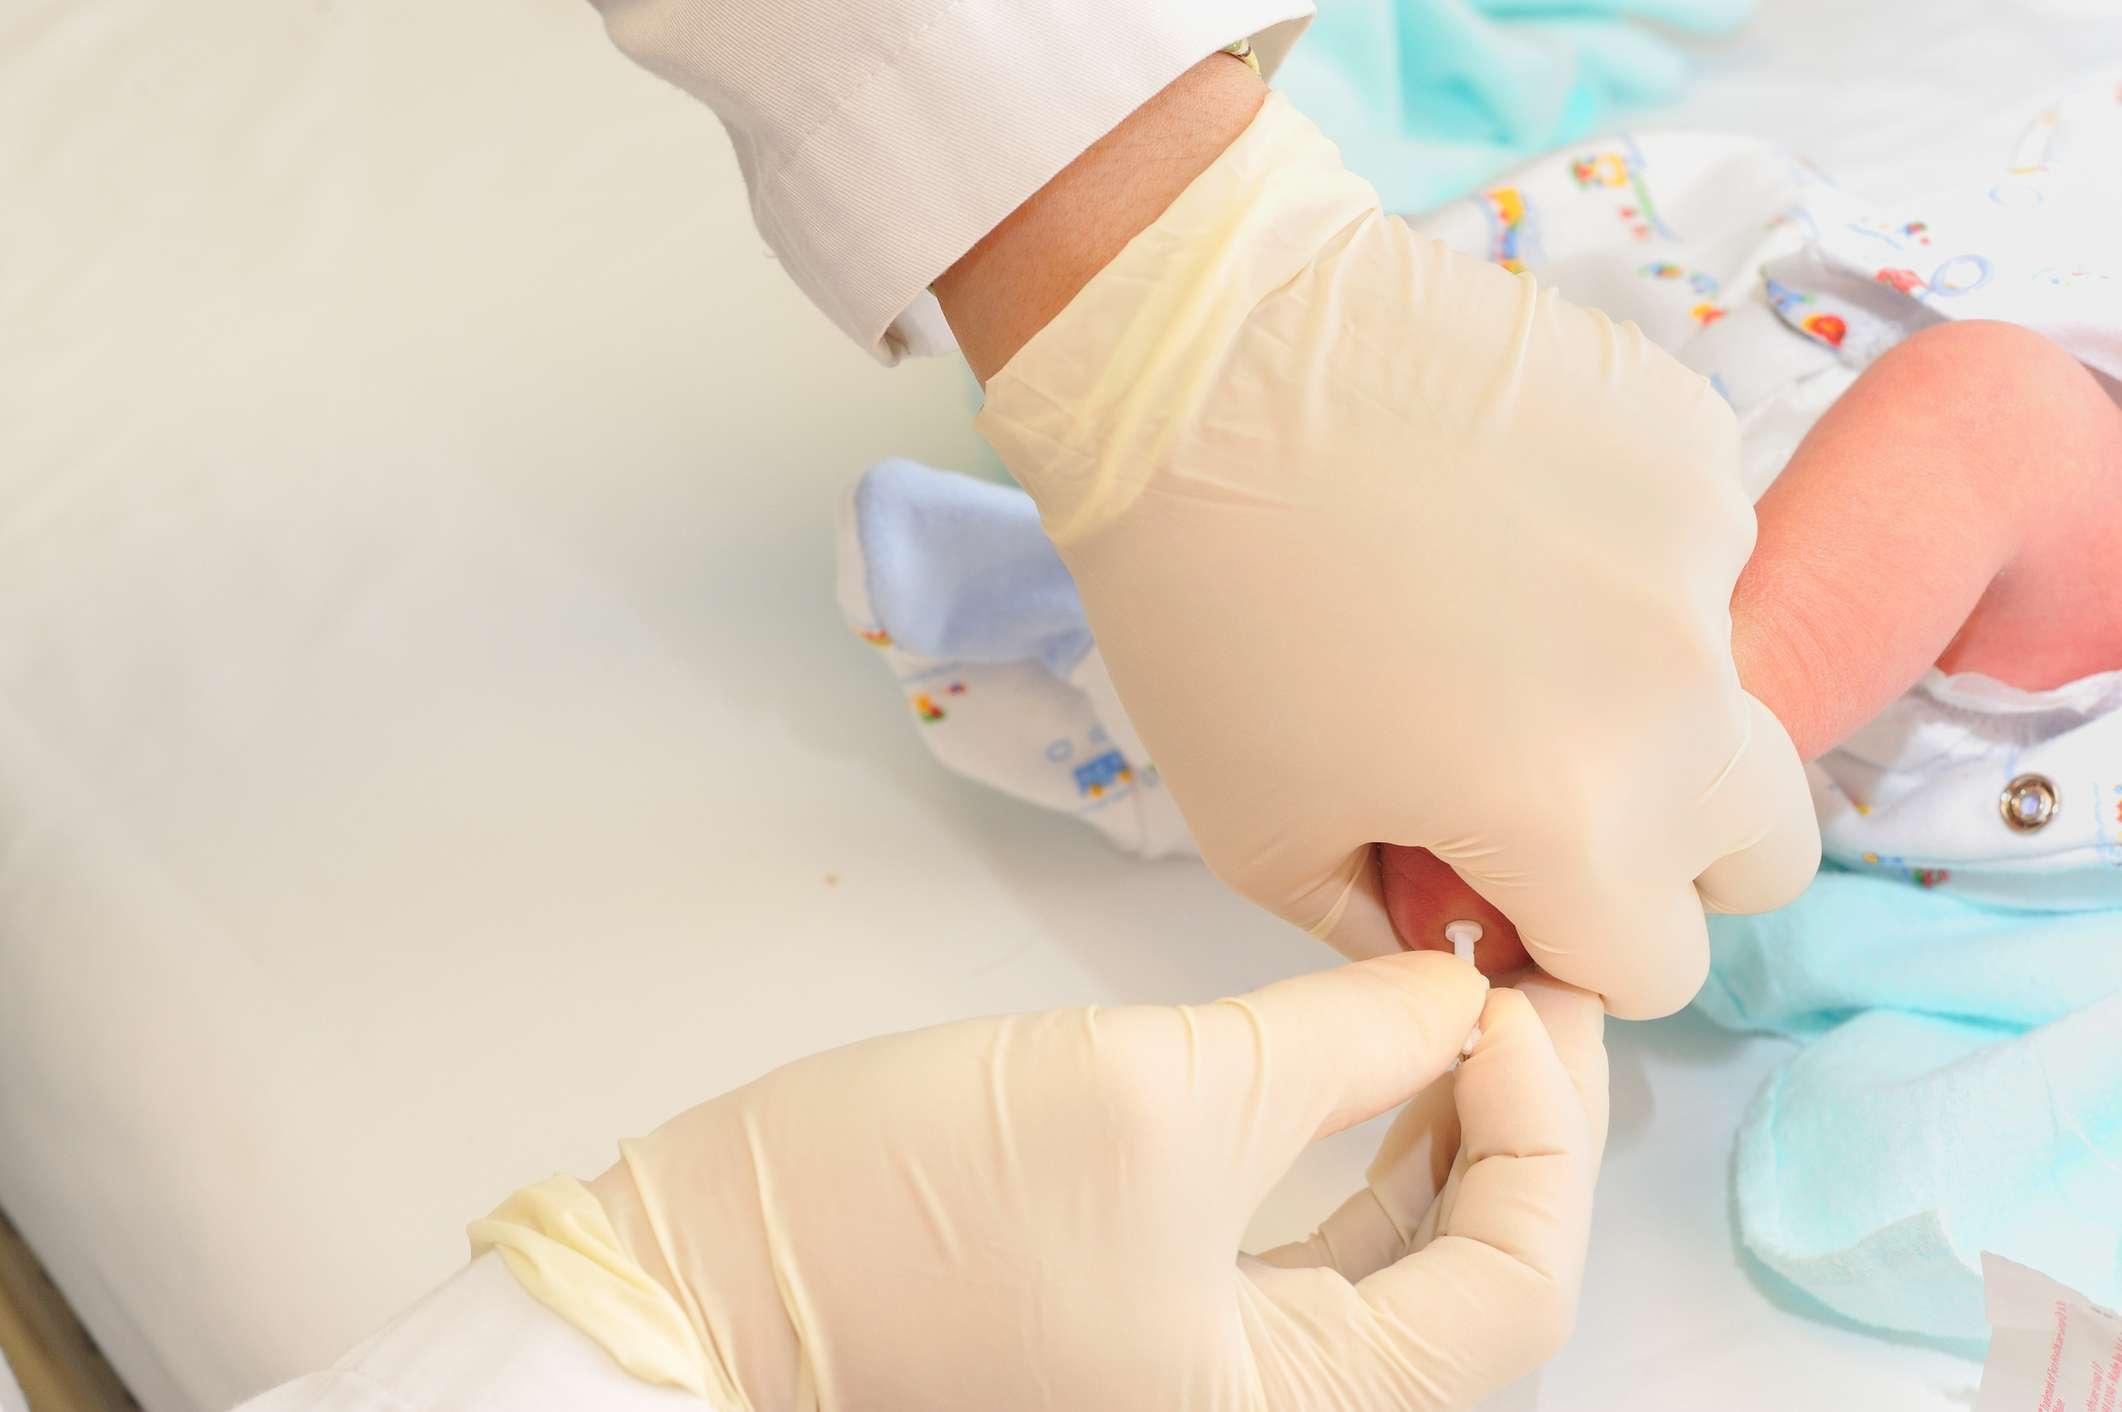 medizinische Person, die neugeborene Babyferse für Blutprobenprüfung sticht.